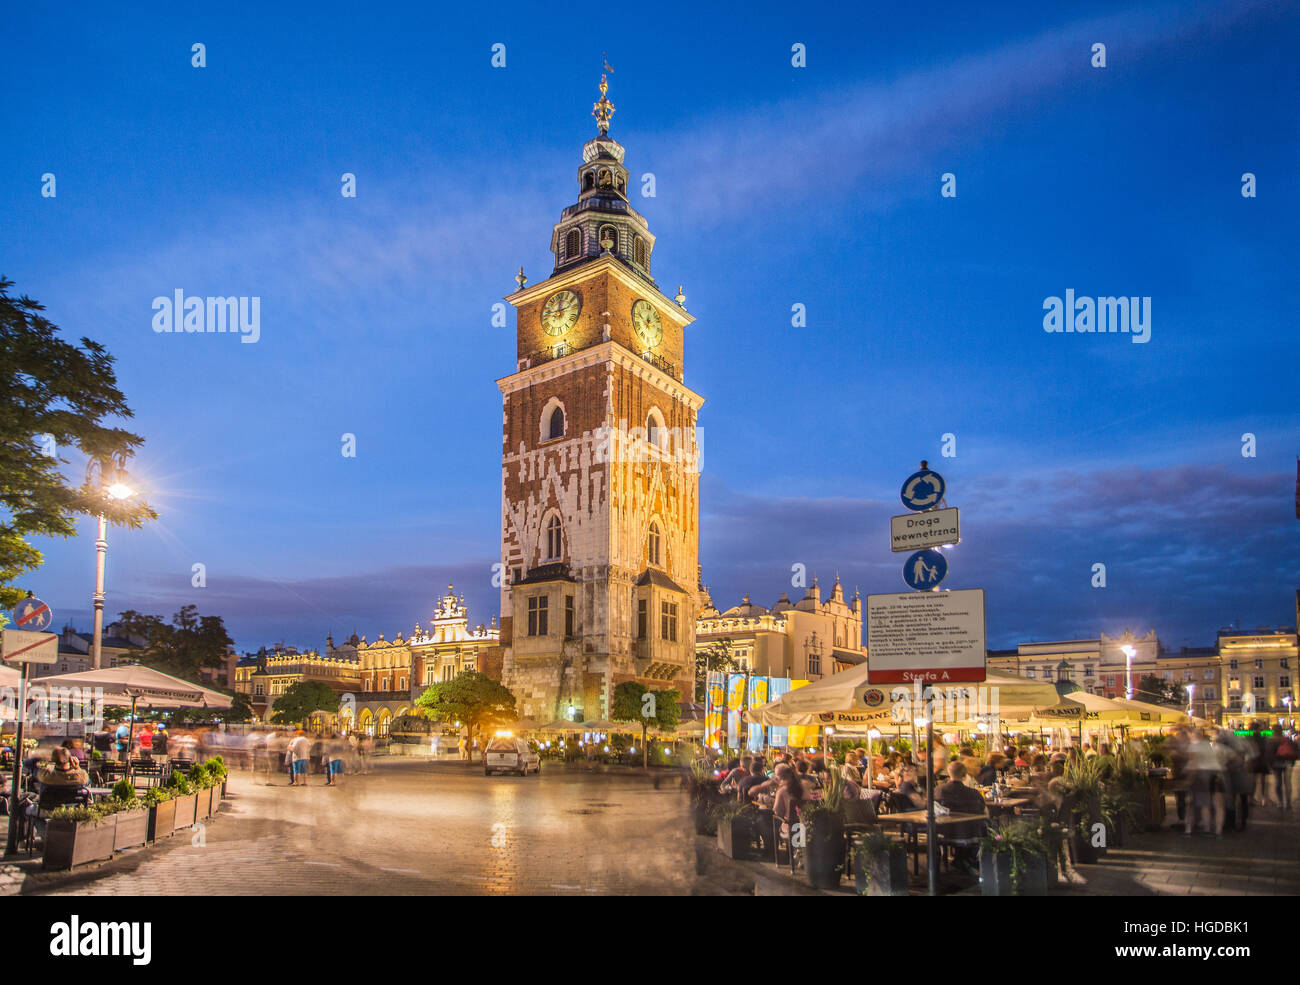 La Plaza del Mercado de Cracovia, Ciudad de noche Foto de stock